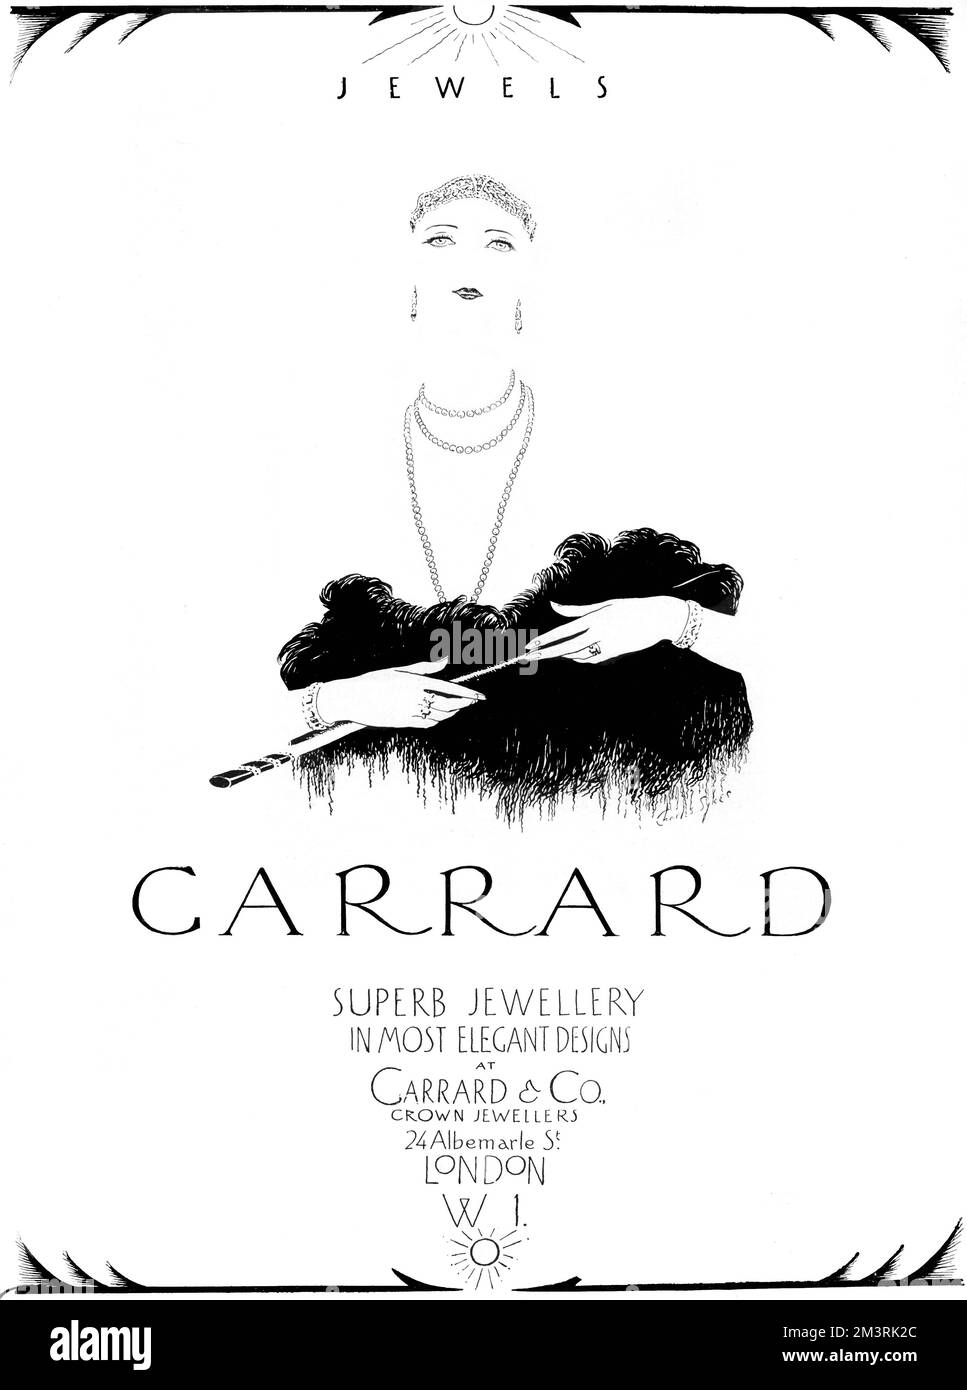 Werbung für Garrard & Co, Kronjuweliere mit einer minimalistischen Illustration einer eleganten Frau, die durch ihren Schmuck definiert ist. Stockfoto